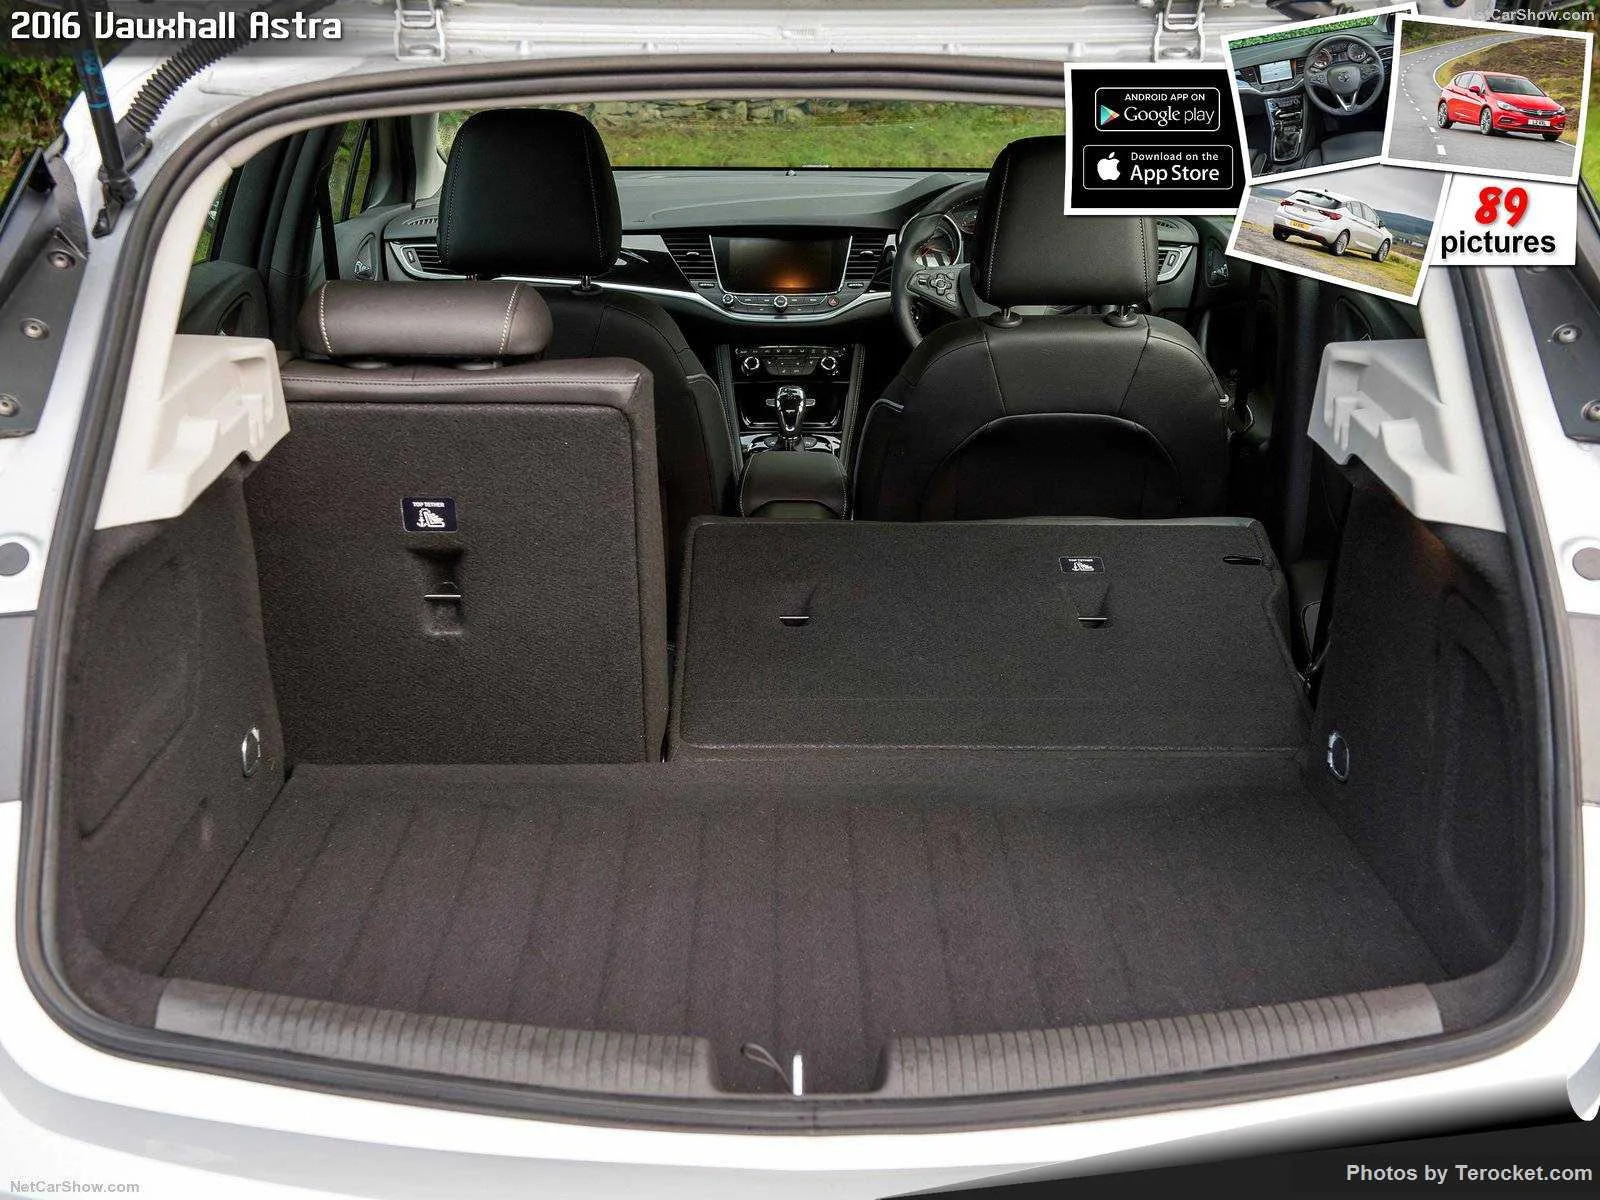 Hình ảnh xe ô tô Vauxhall Astra 2016 & nội ngoại thất